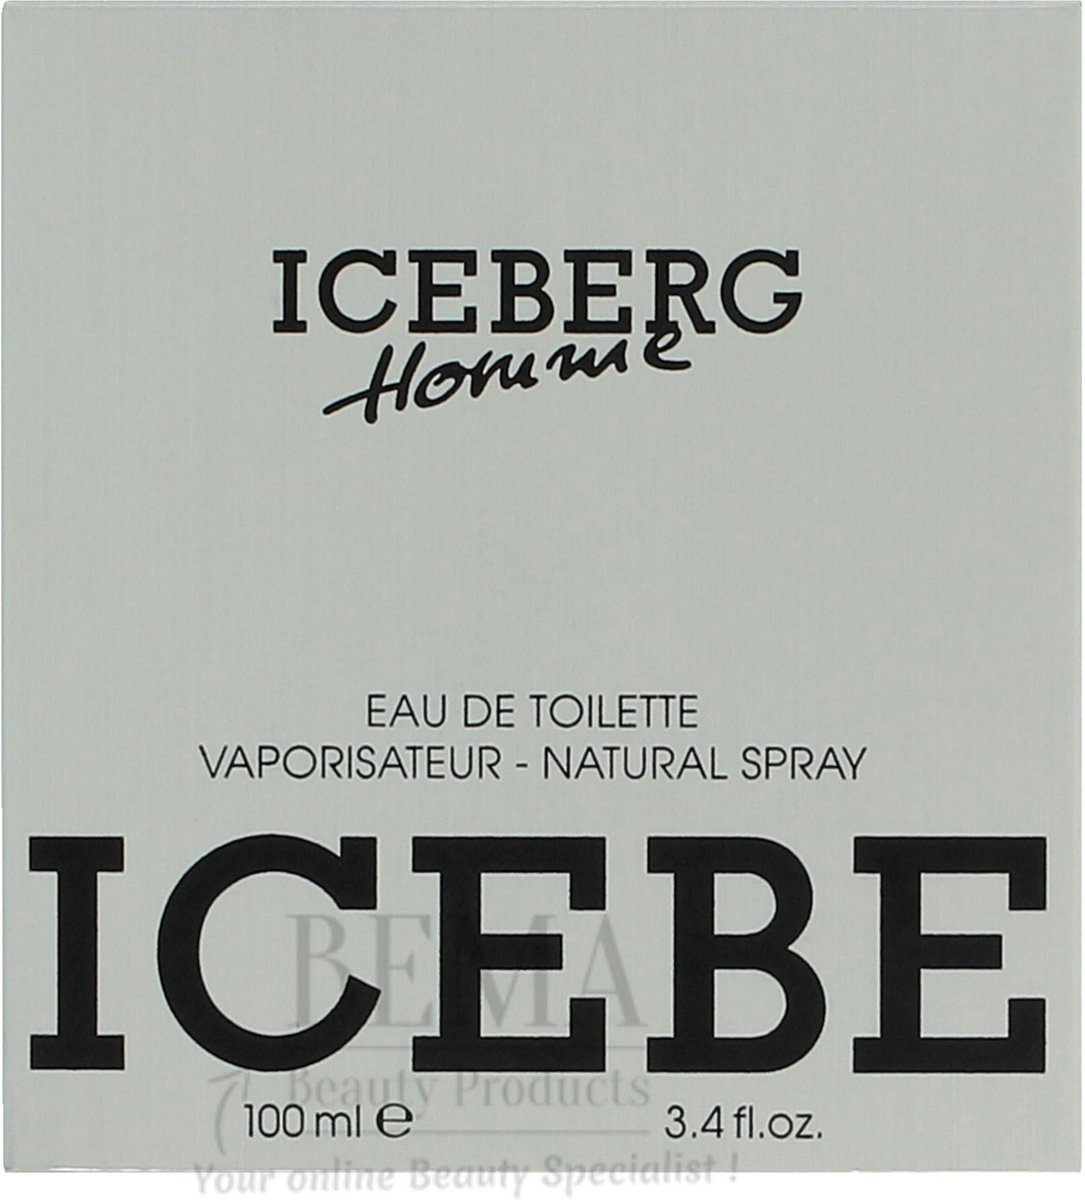 Iceberg Homme by Iceberg 100 ml - Eau De Toilette Spray